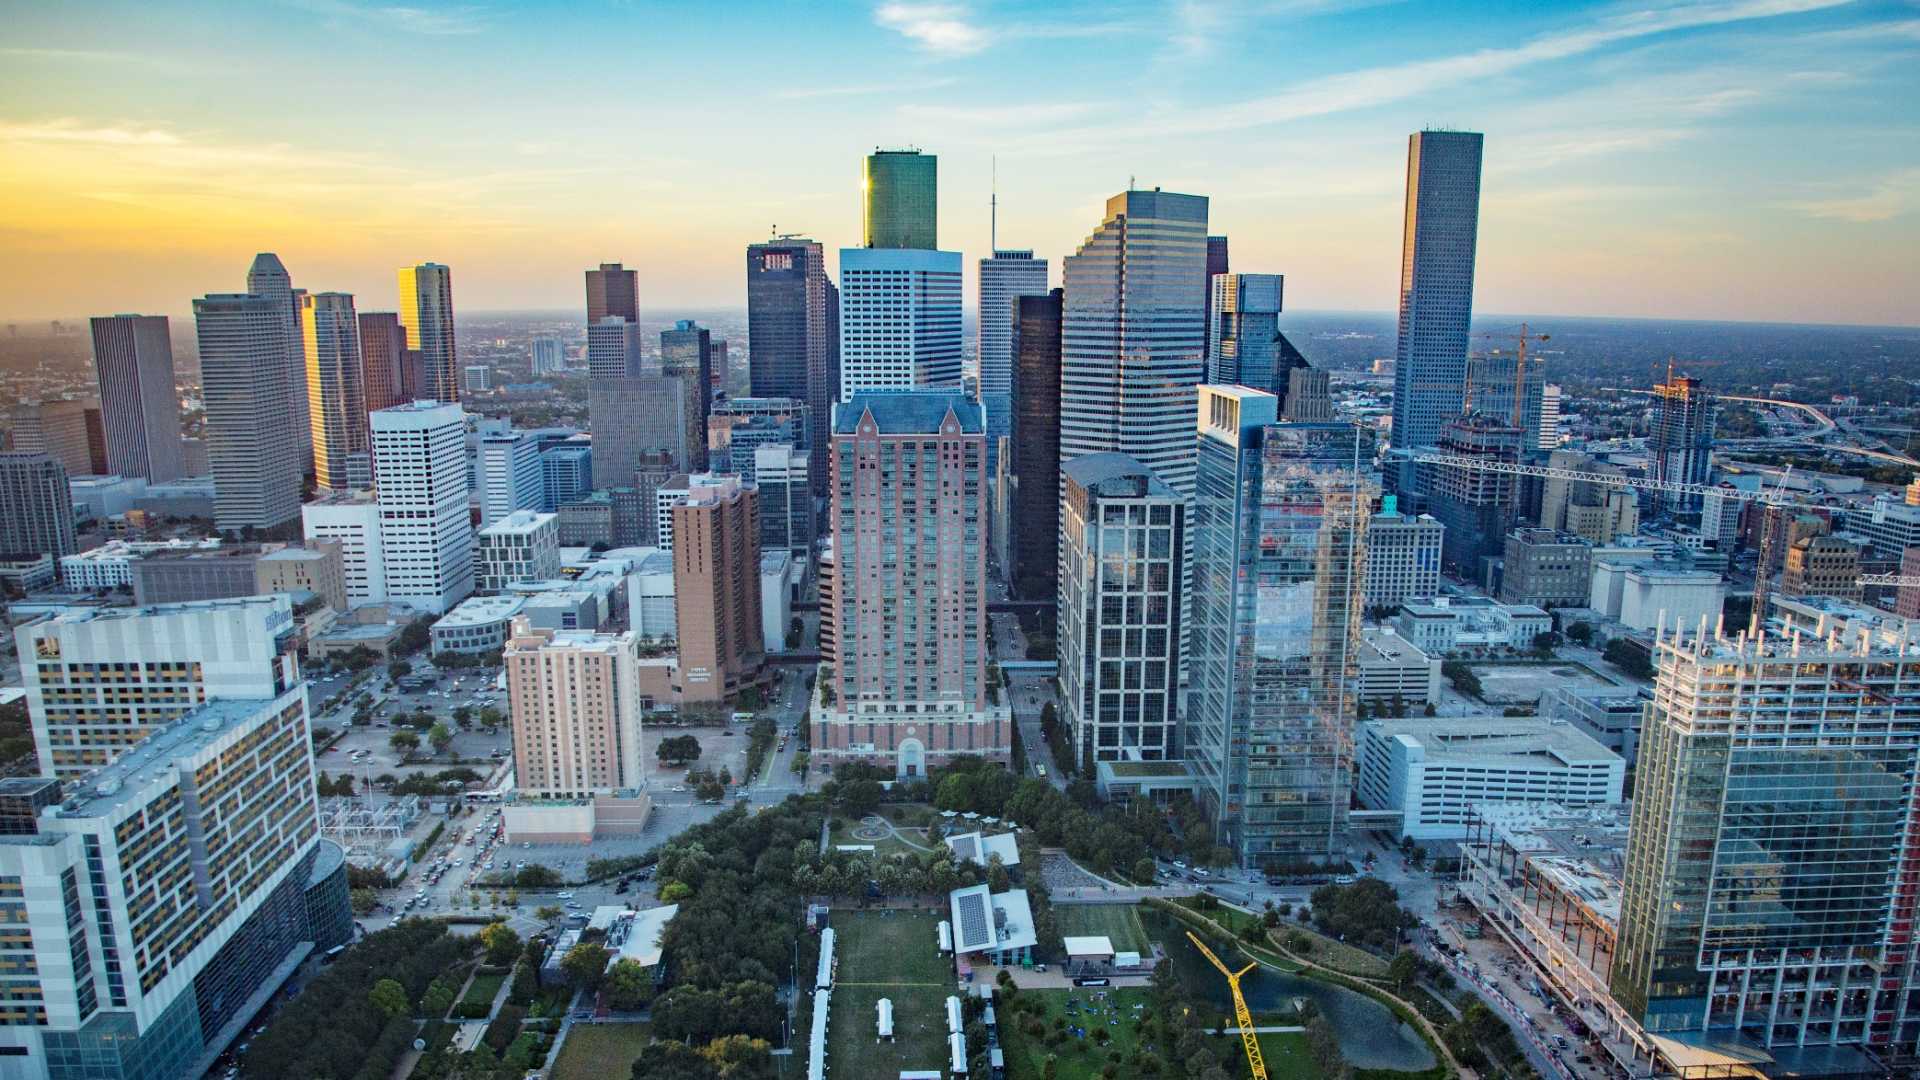 Houston Astros to develop downtown entertainment center - Houston